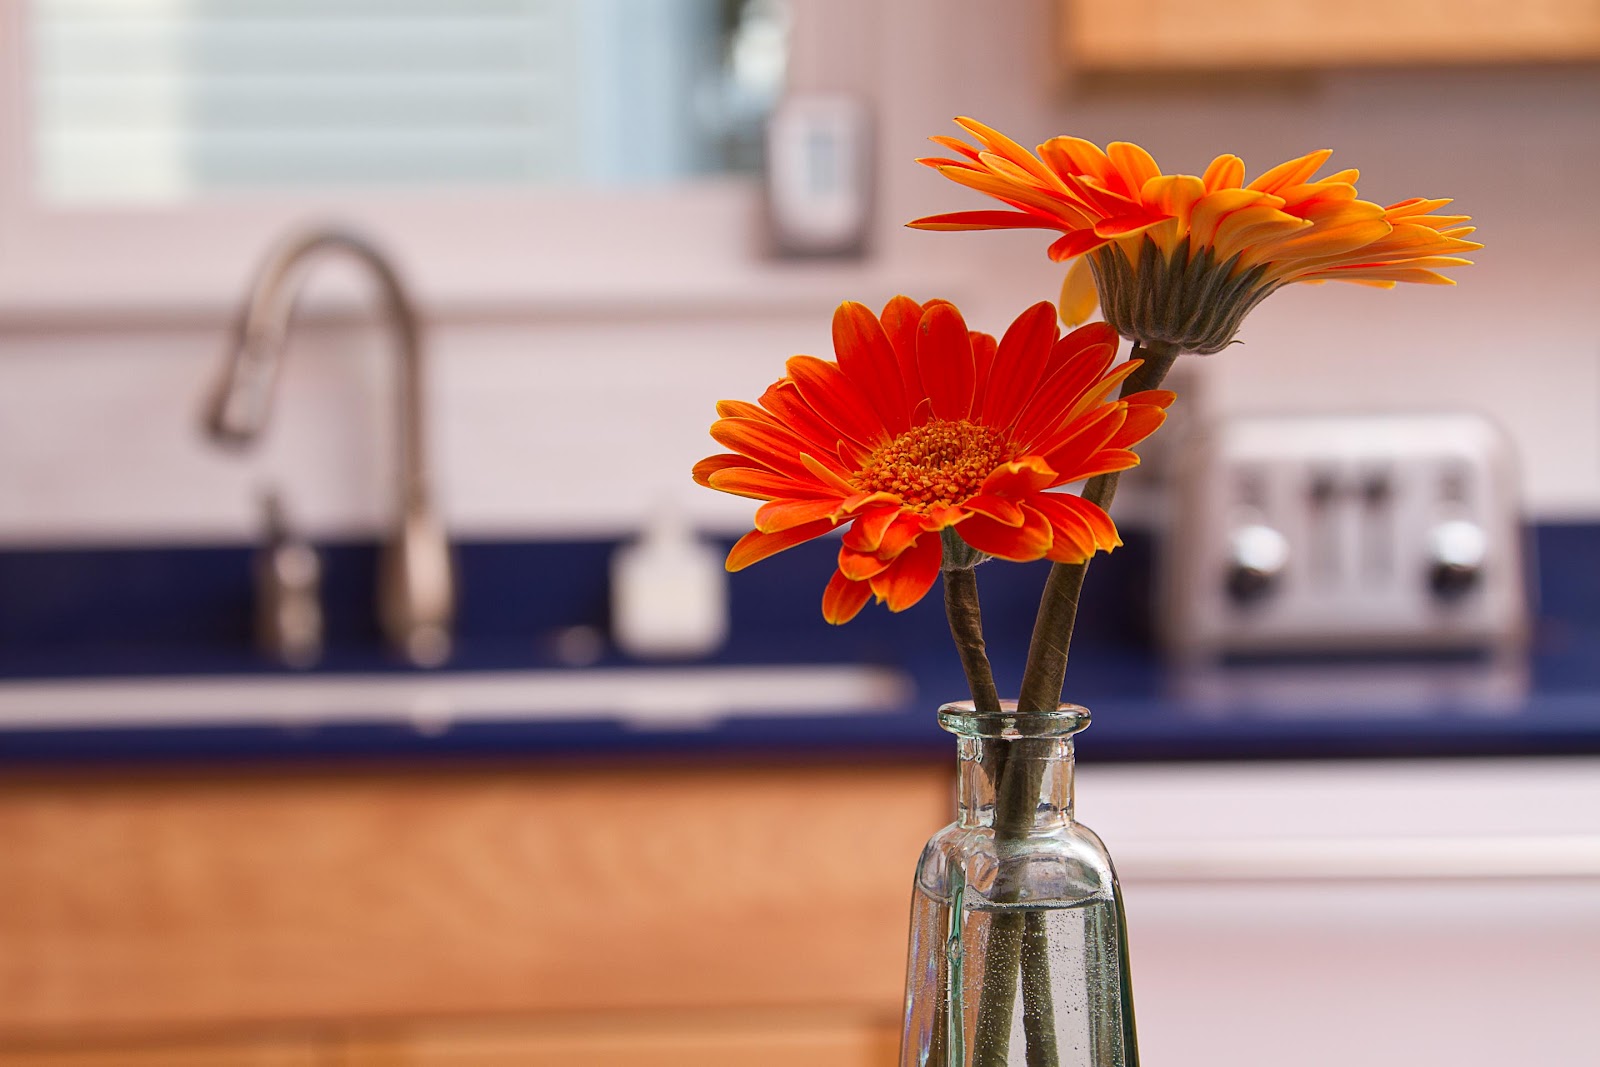 Flowers+in+kitchen